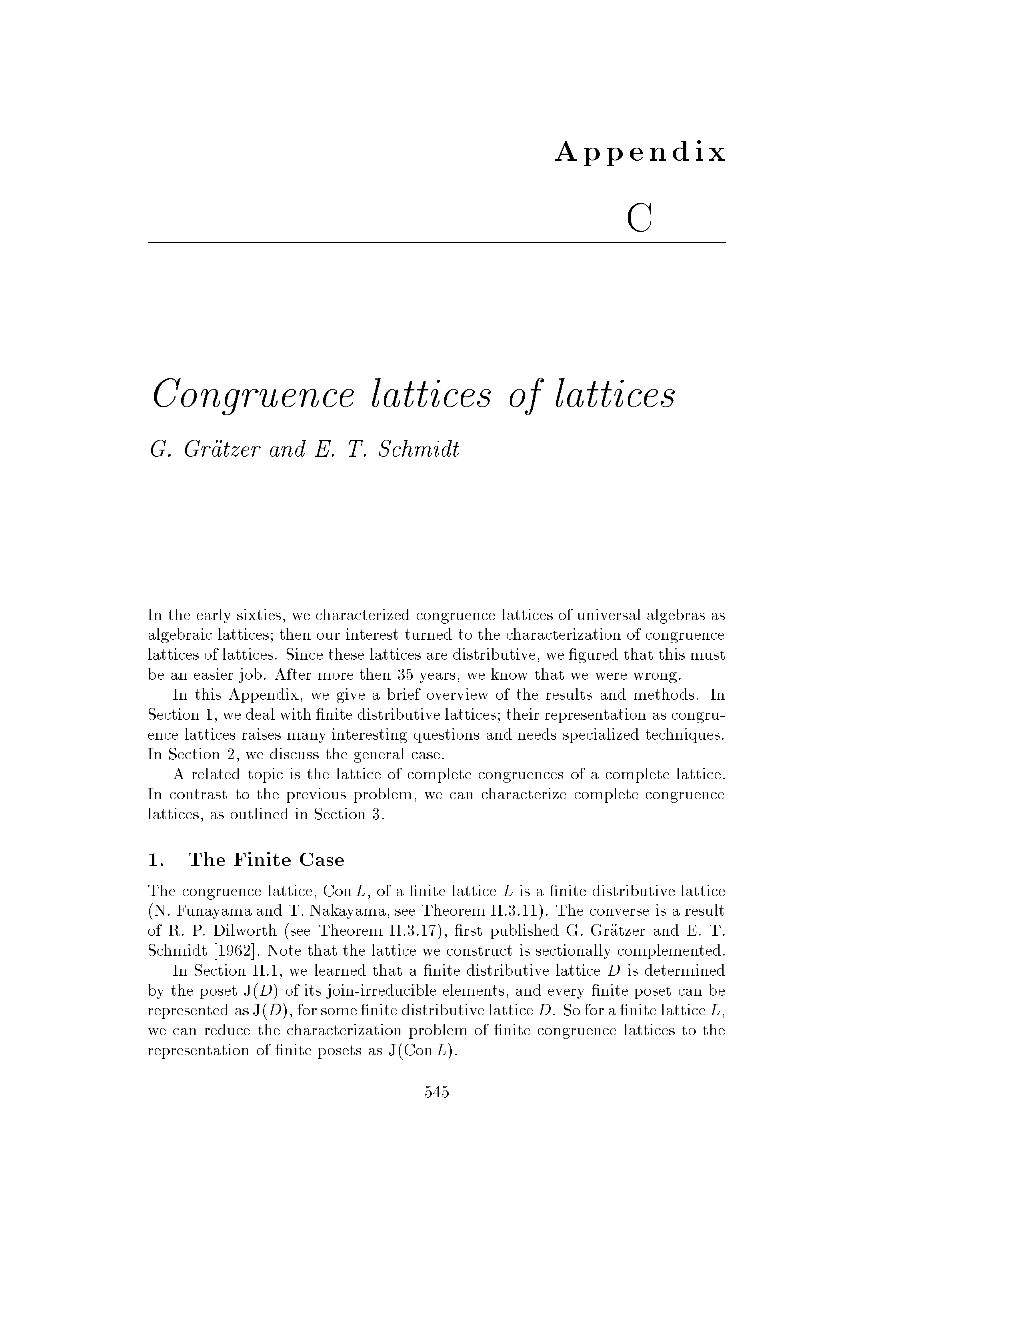 Congruence Lattices of Lattices